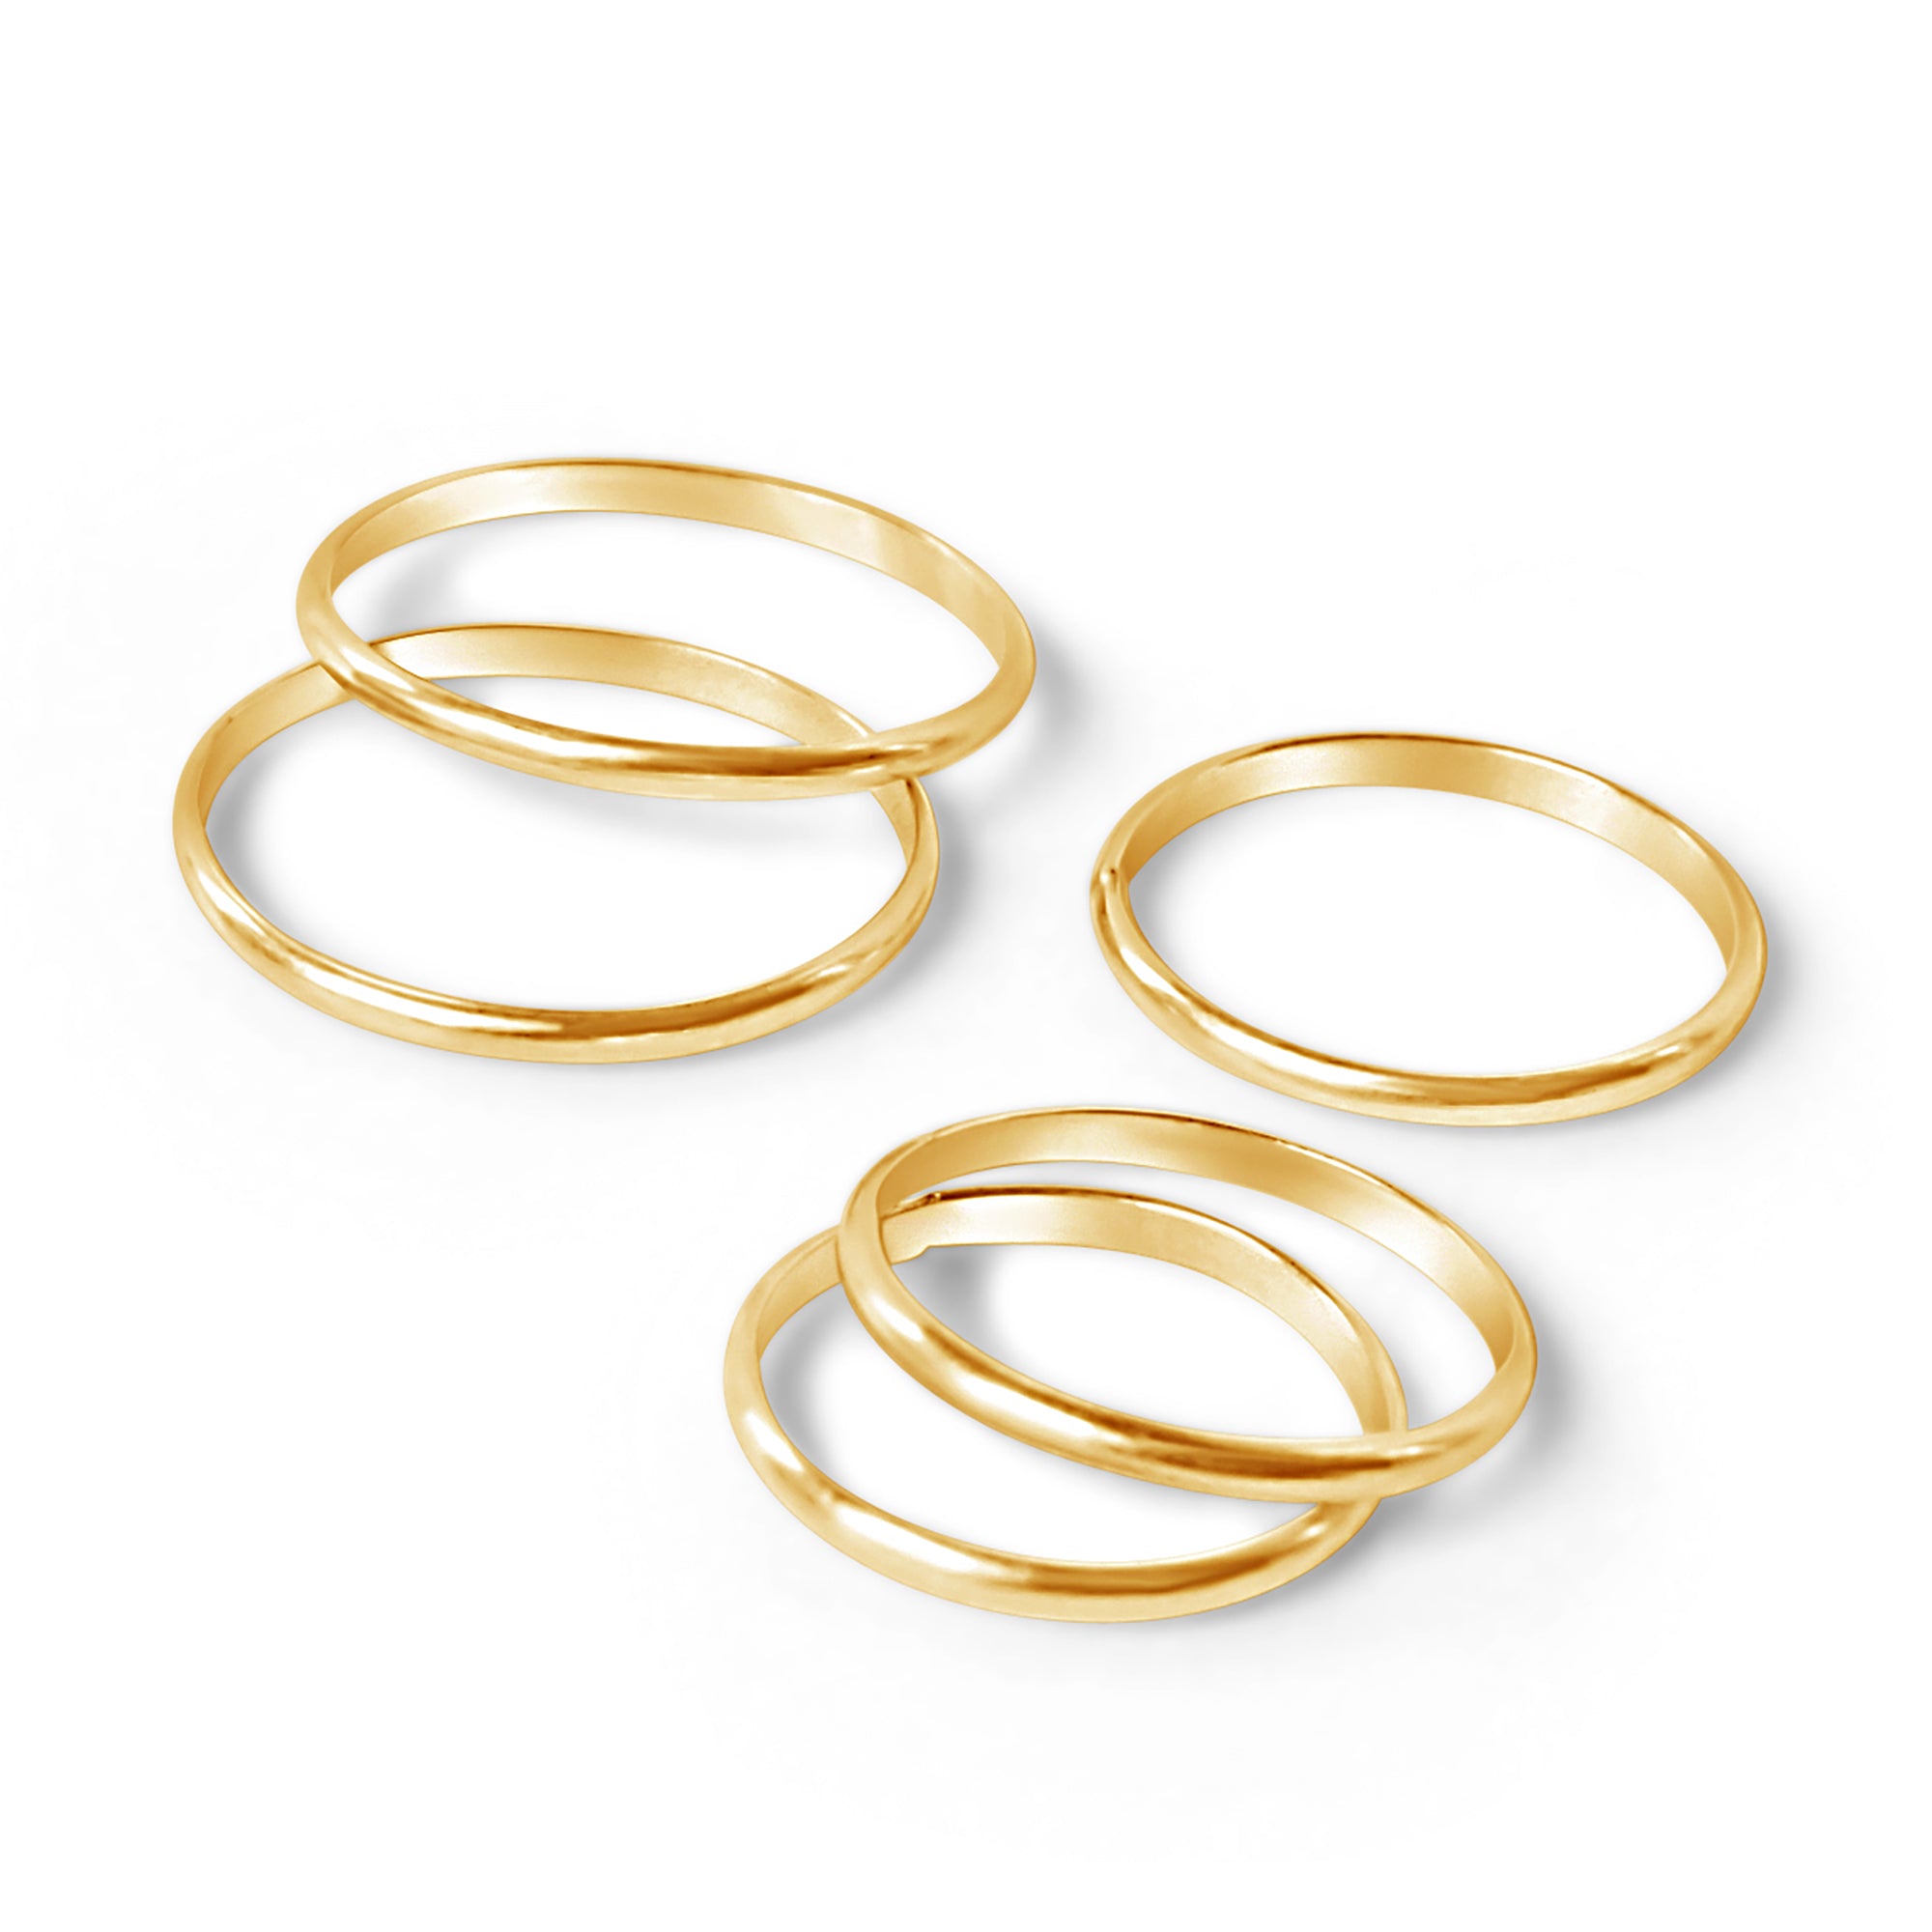 5 golden rings